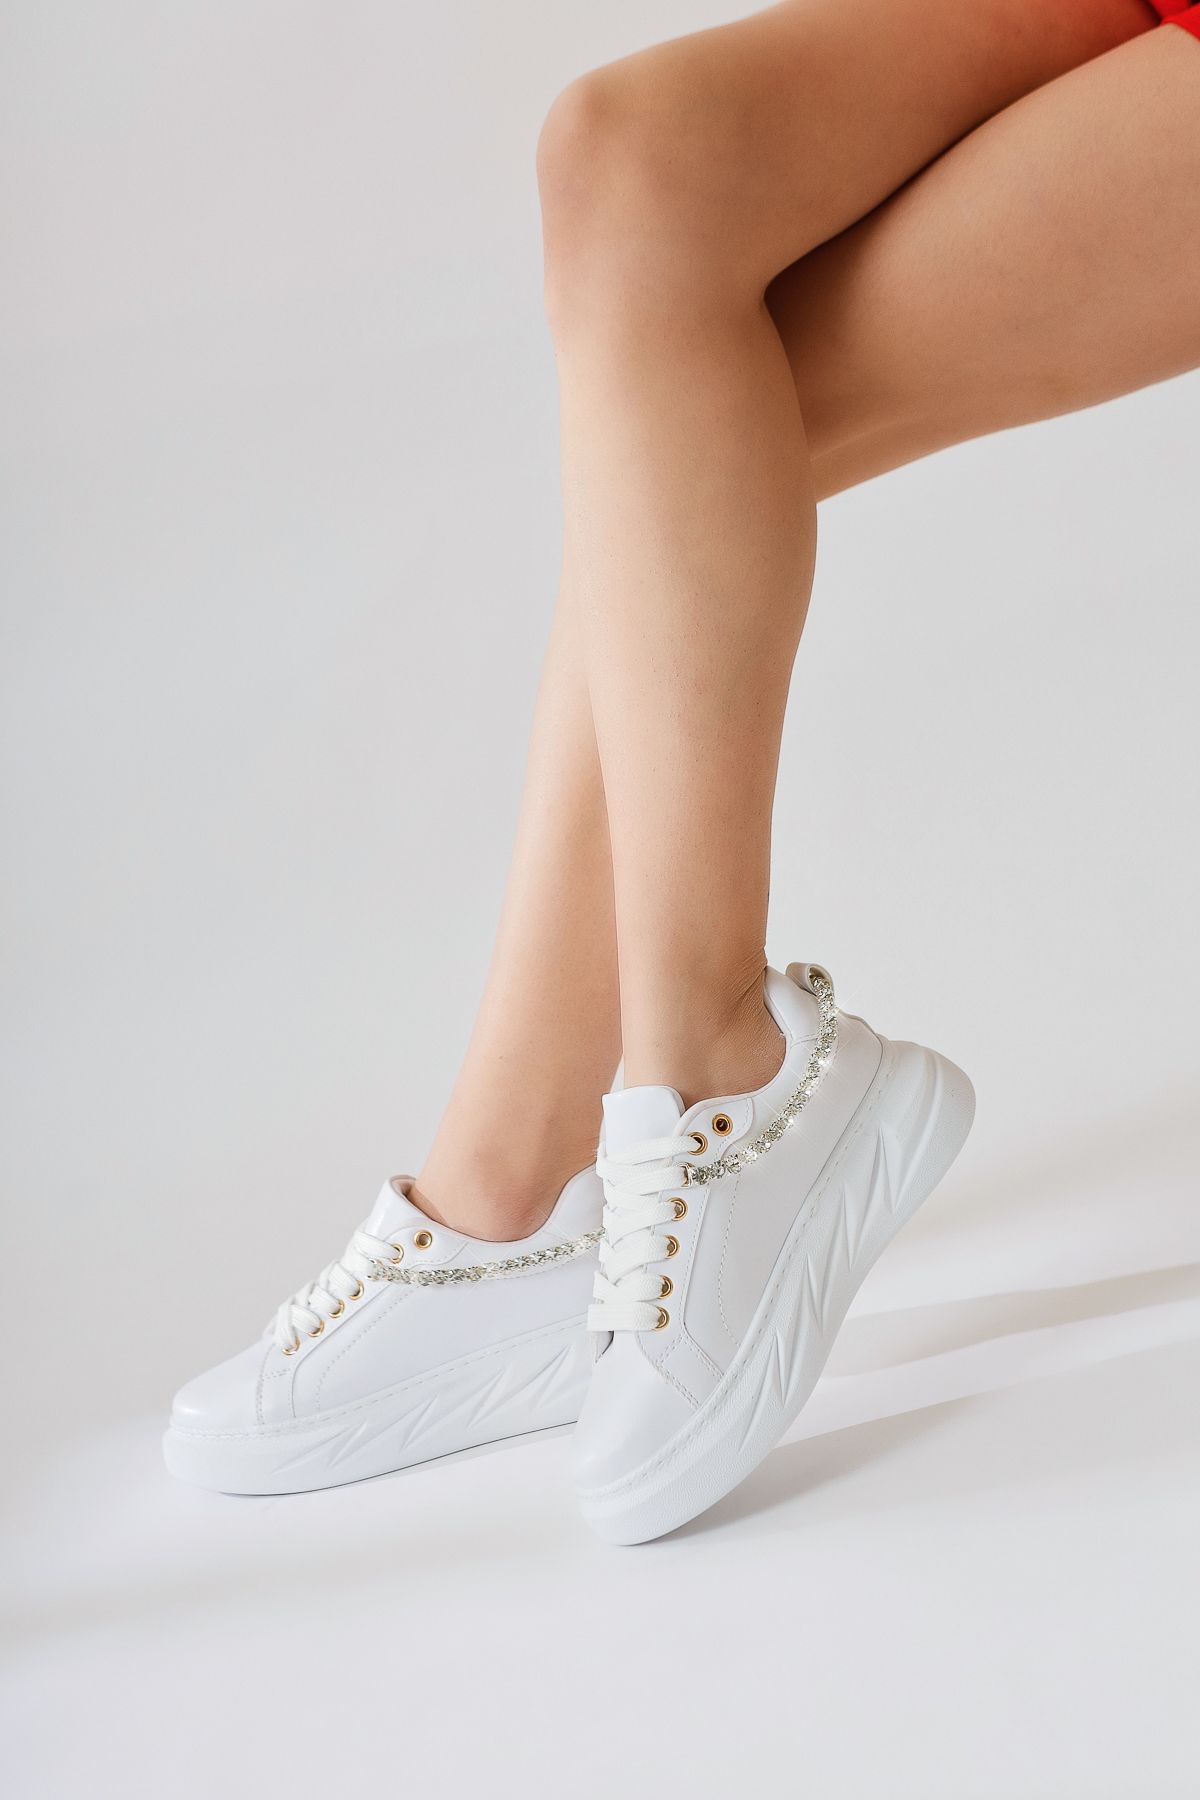 Limoya Simonne Beyaz Elmas Taş Detaylı Bağcıklı Sneakers